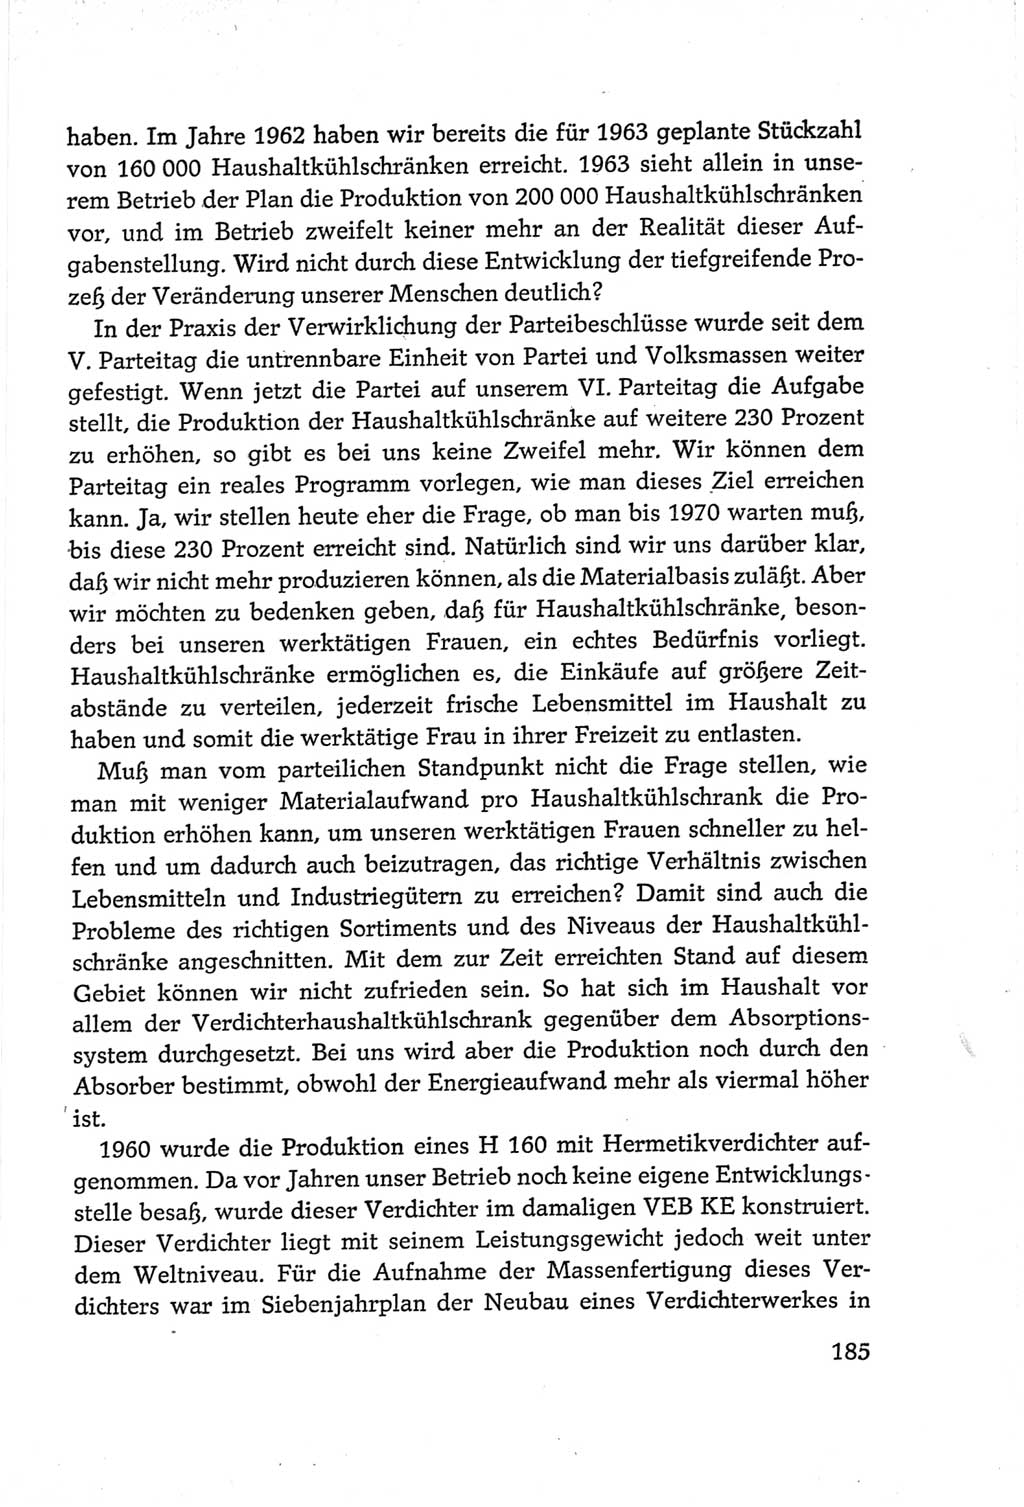 Protokoll der Verhandlungen des Ⅵ. Parteitages der Sozialistischen Einheitspartei Deutschlands (SED) [Deutsche Demokratische Republik (DDR)] 1963, Band Ⅲ, Seite 185 (Prot. Verh. Ⅵ. PT SED DDR 1963, Bd. Ⅲ, S. 185)